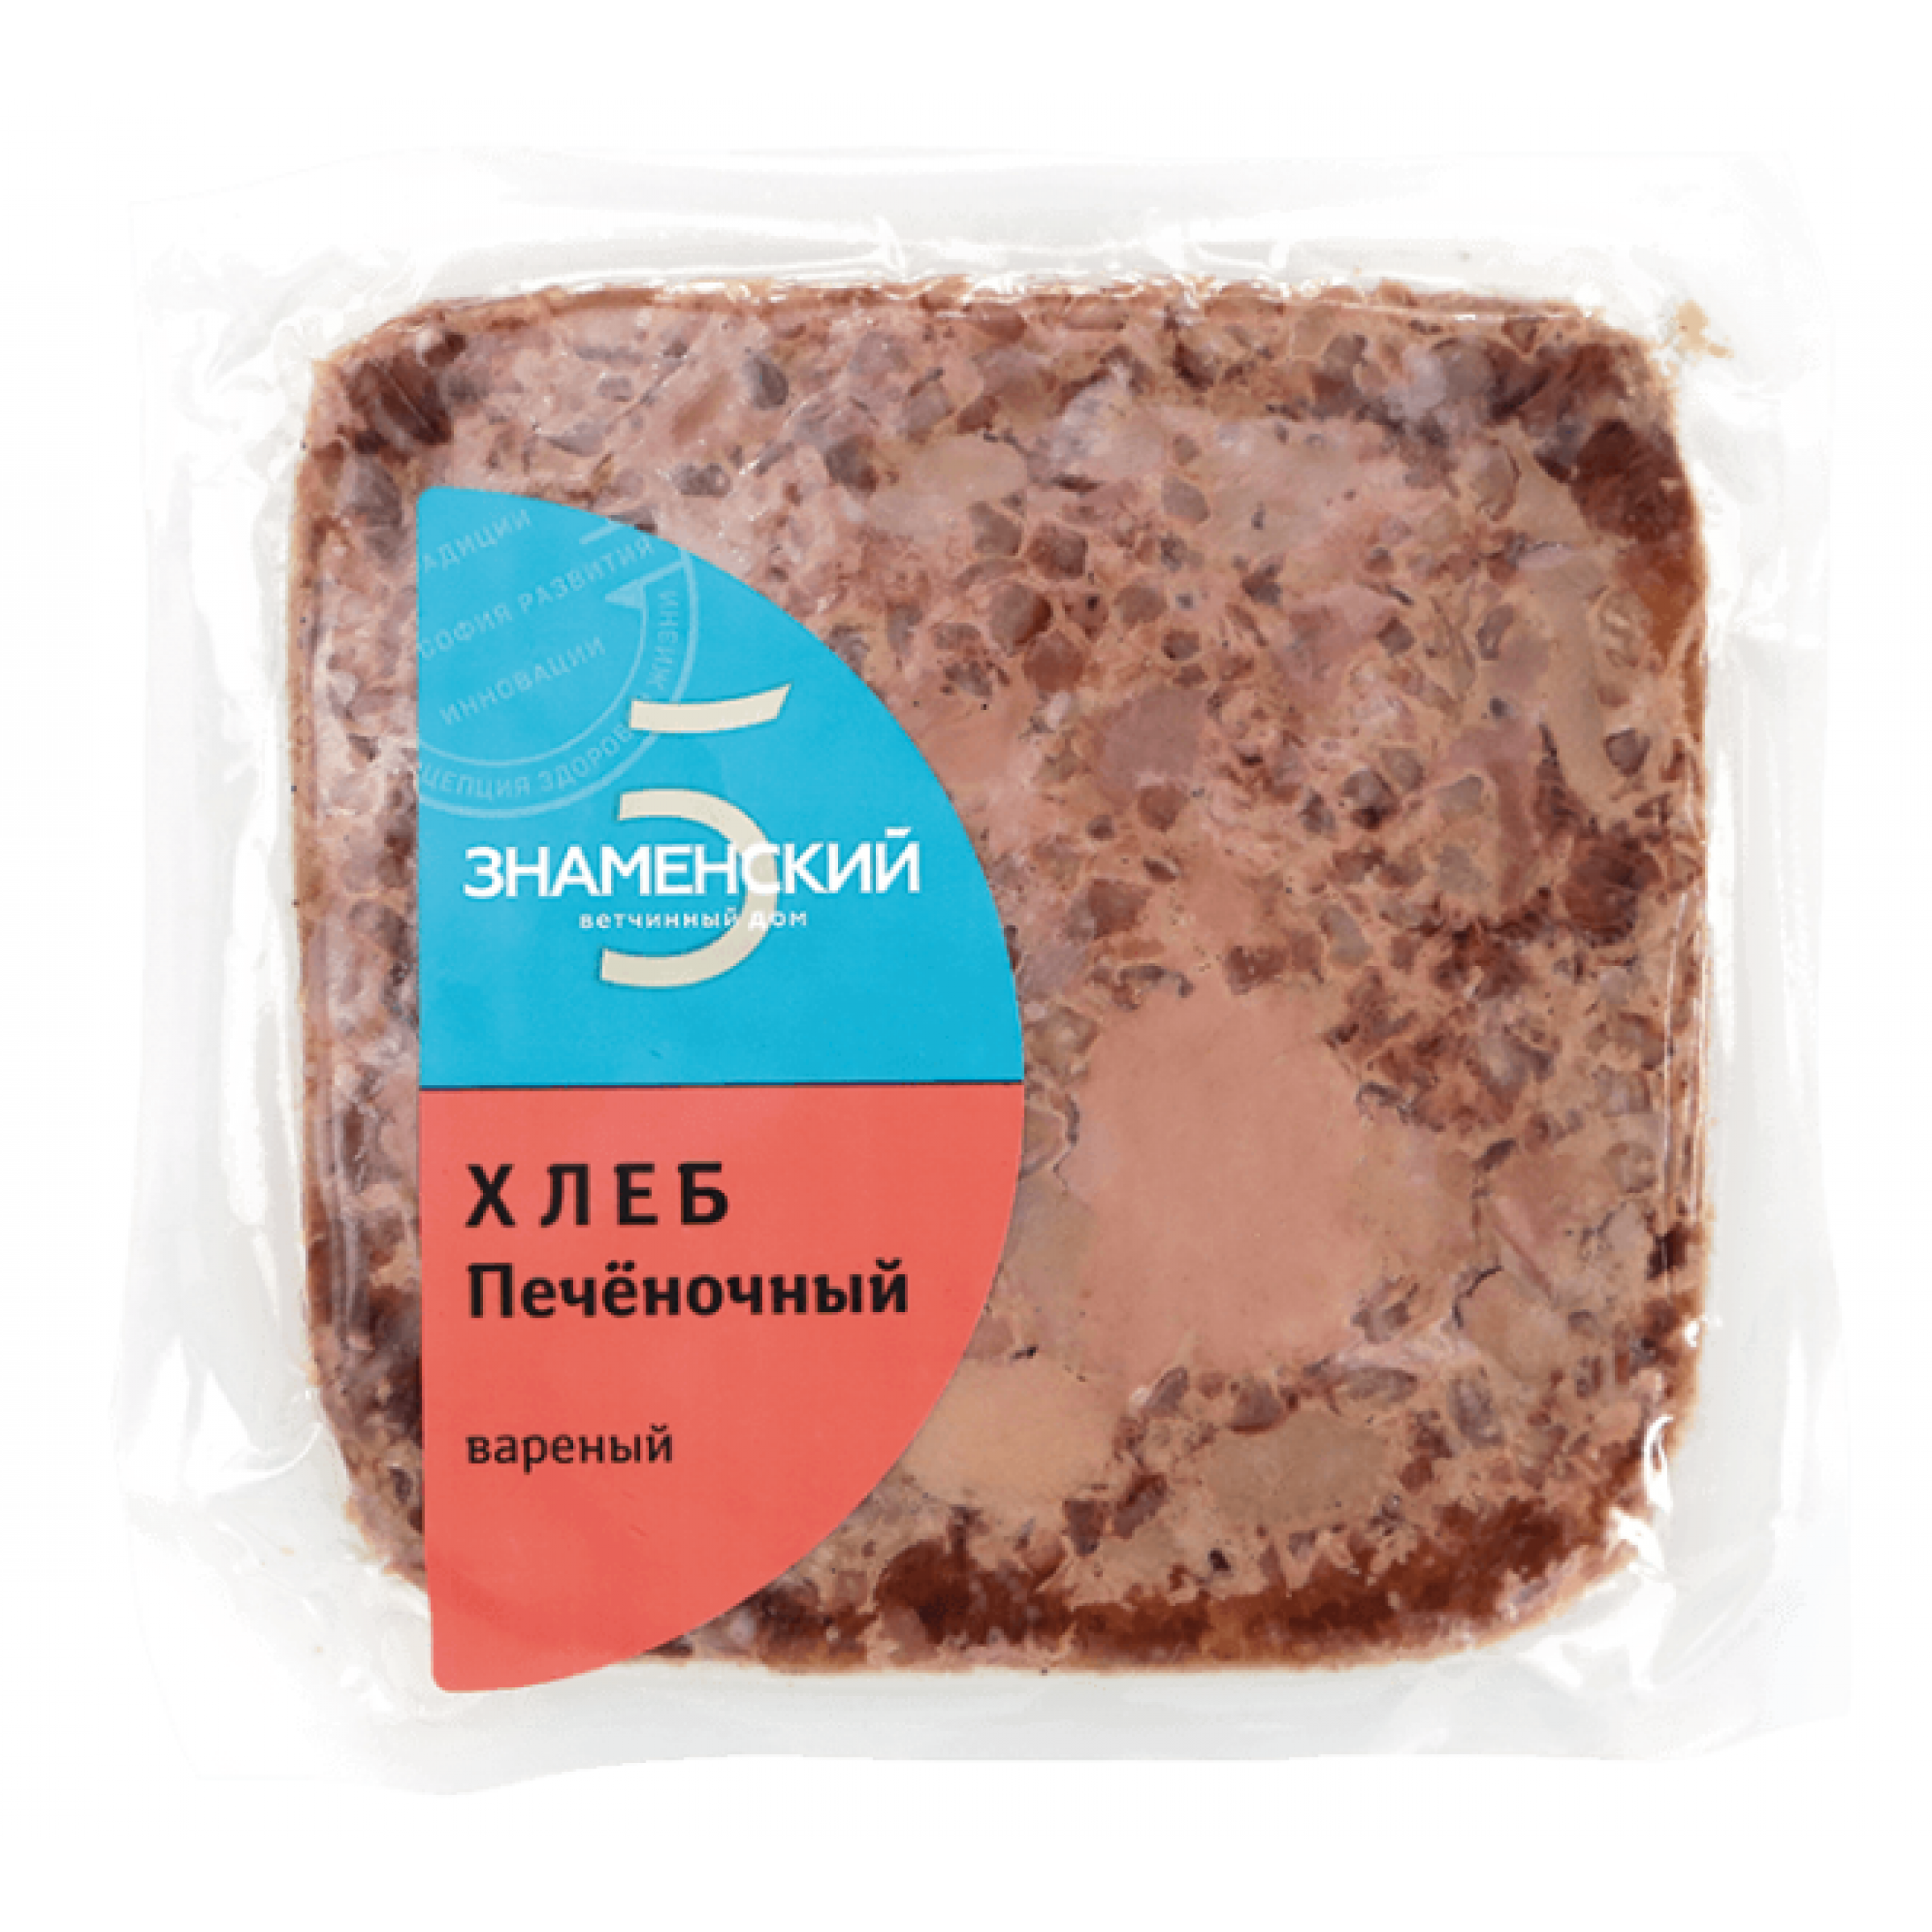 Вареный продукт Хлеб печеночный Знаменский (средний вес: 2200 г)